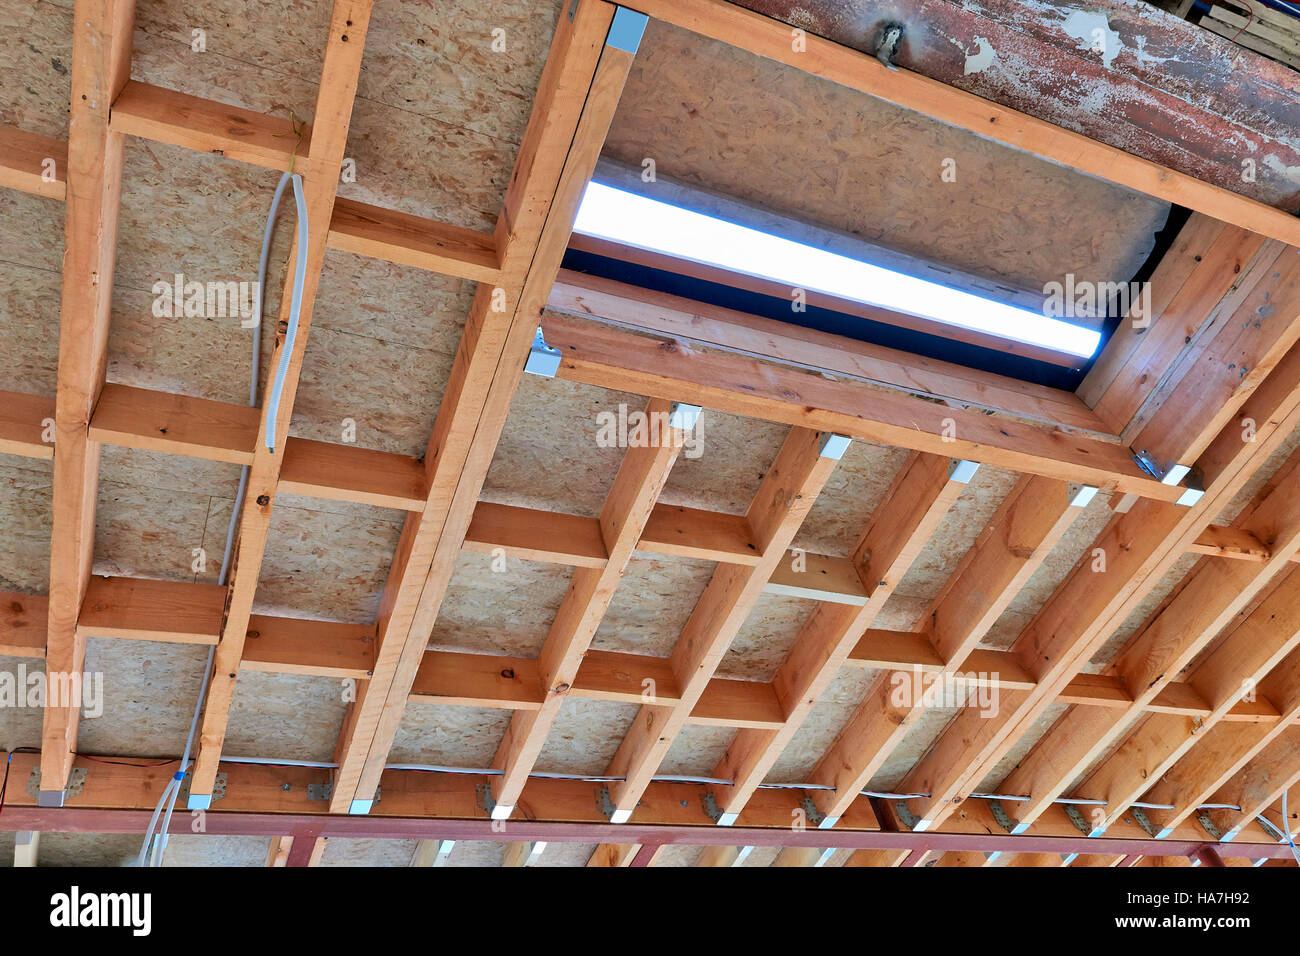 Neue Rahmen für Decke Dach Bau bereit für die Fertigstellung  Stockfotografie - Alamy